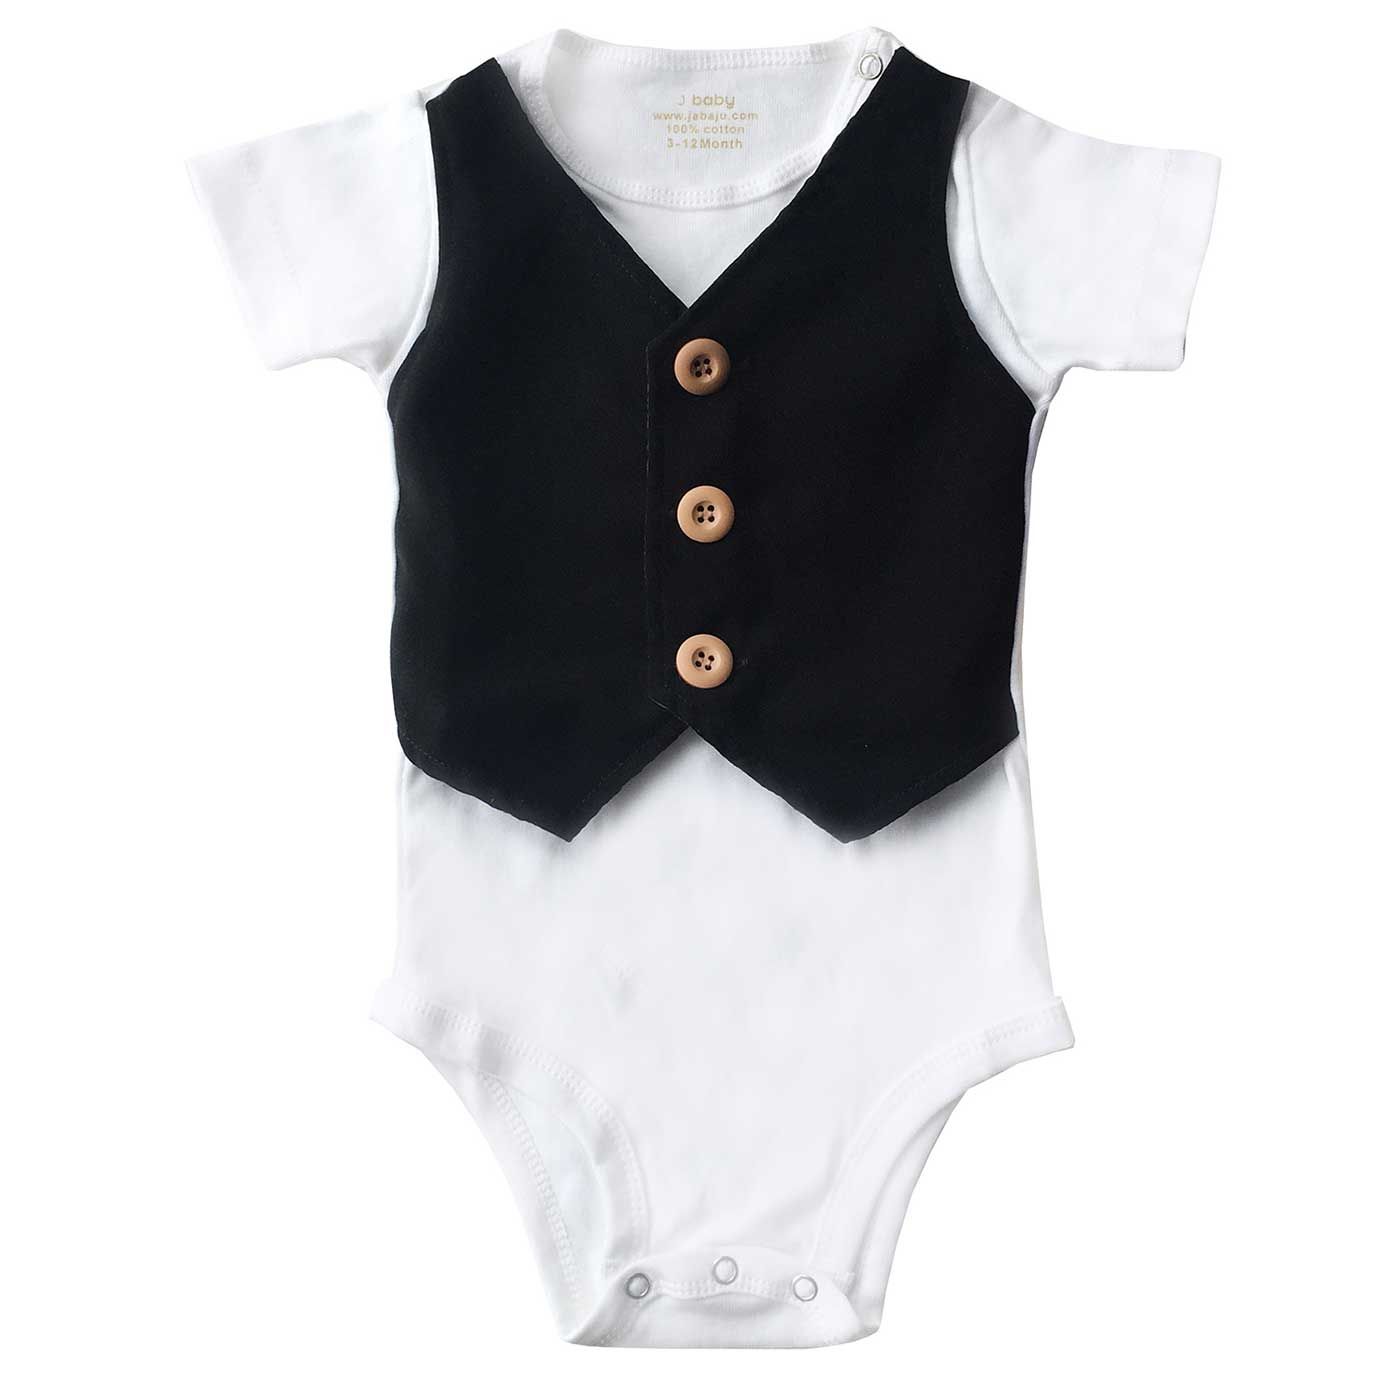 J-Baby Bodysuit Rompi Kain Hitam 3-12 month - 1